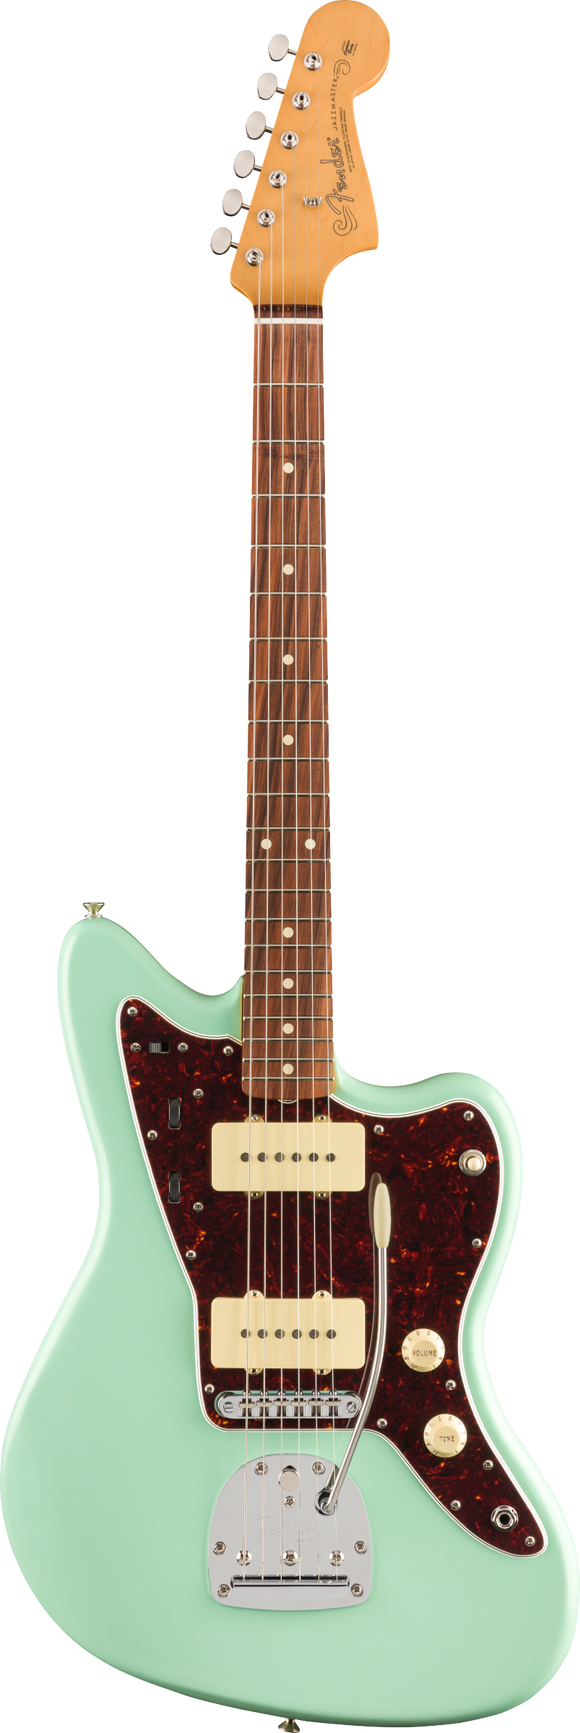 Fender Vintera '60s Jazzmaster Modified, Pau Ferro Fingerboard, Surf Green